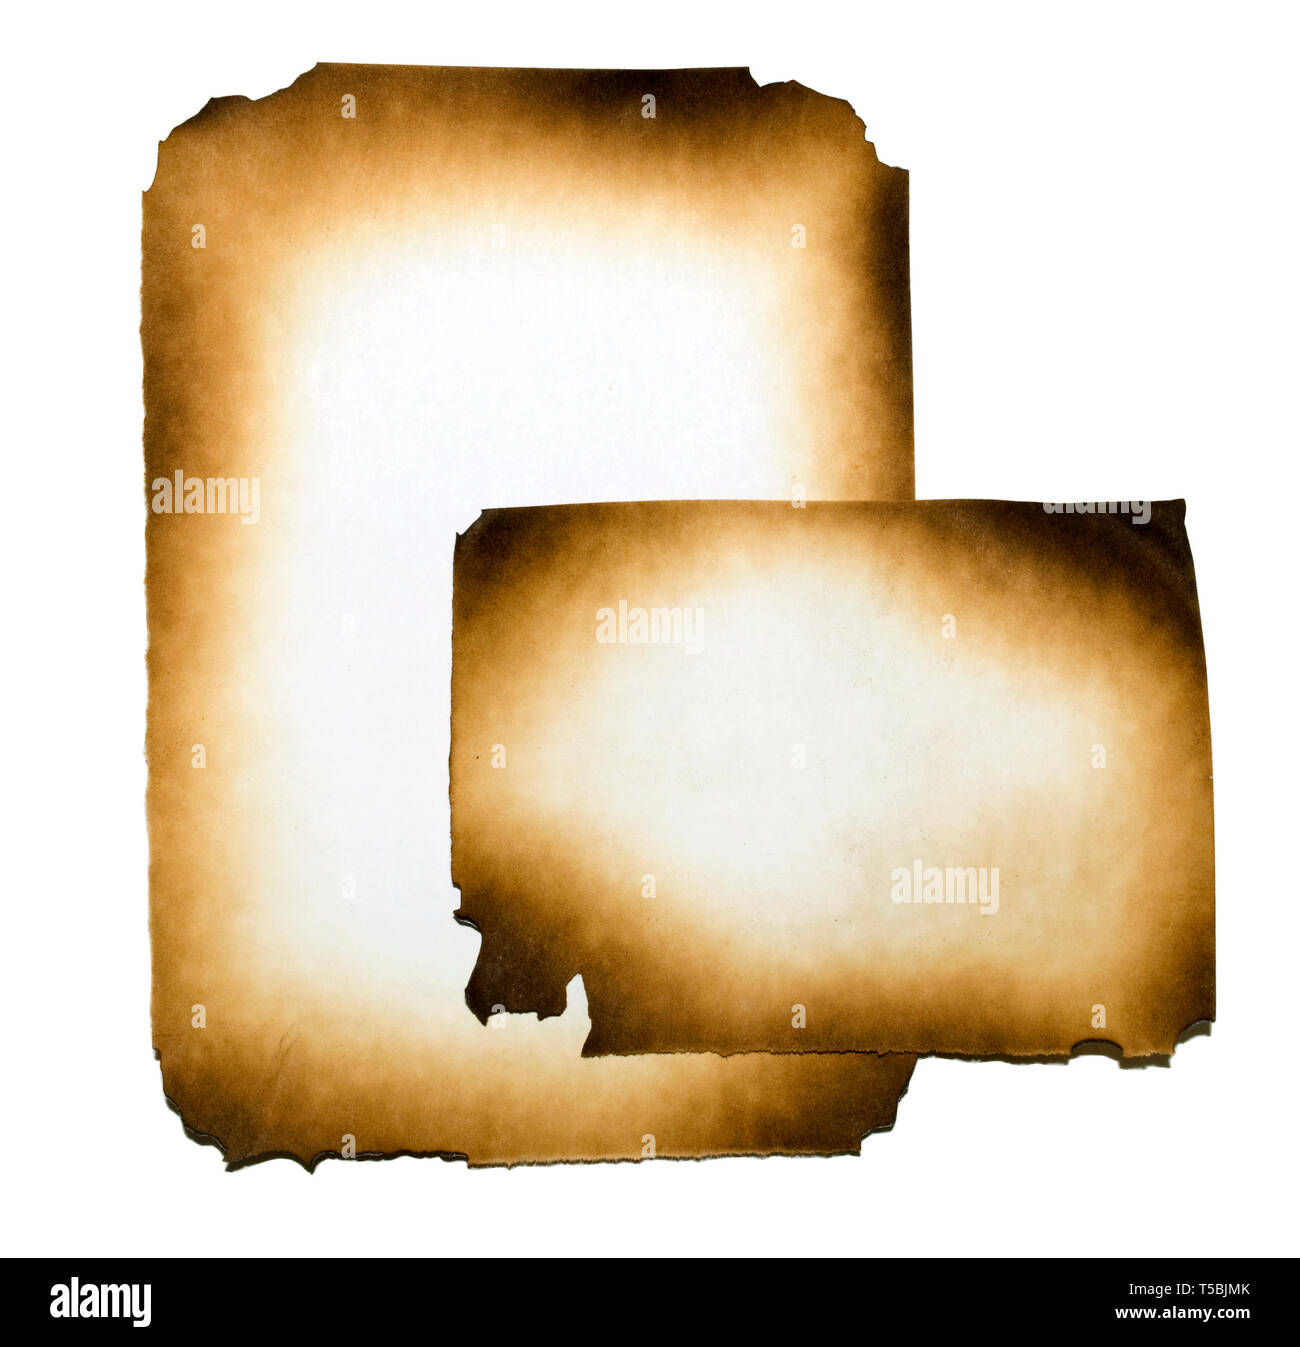 Papier brûlé collage sur fond blanc avec clipping path Banque D'Images